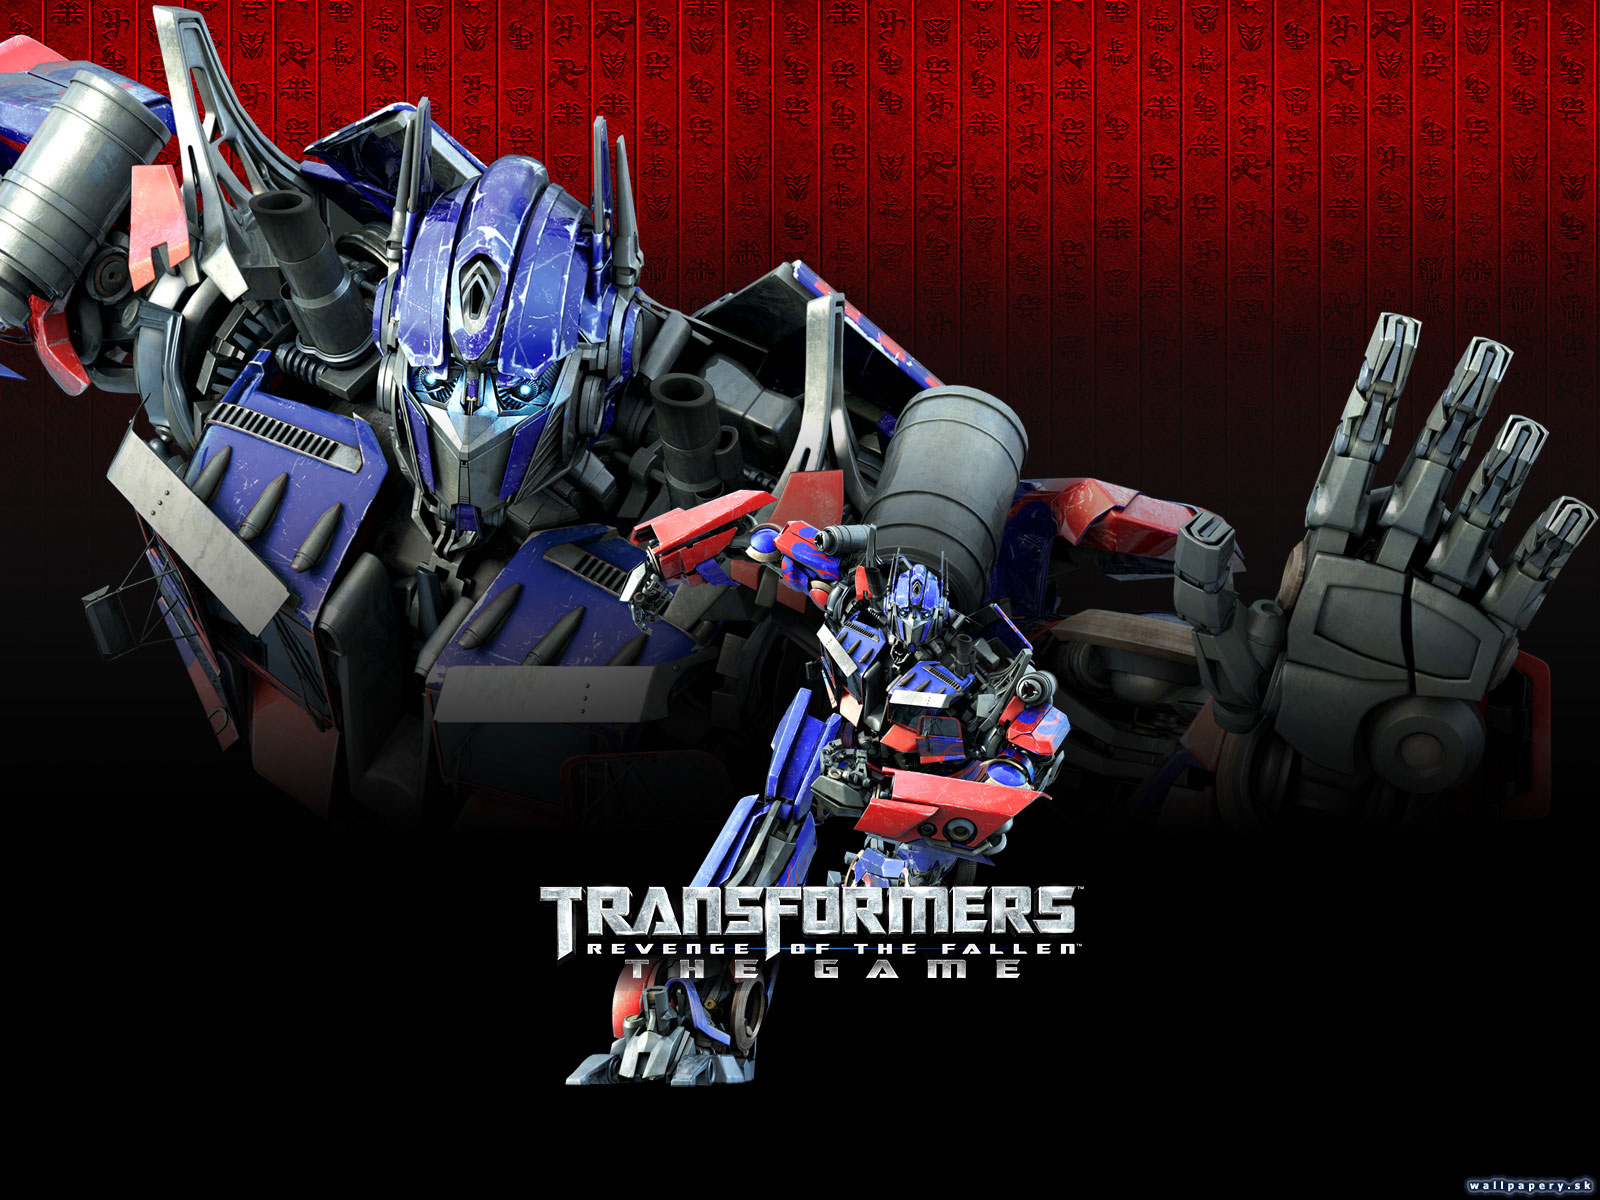 Transformers: Revenge of the Fallen - wallpaper 1